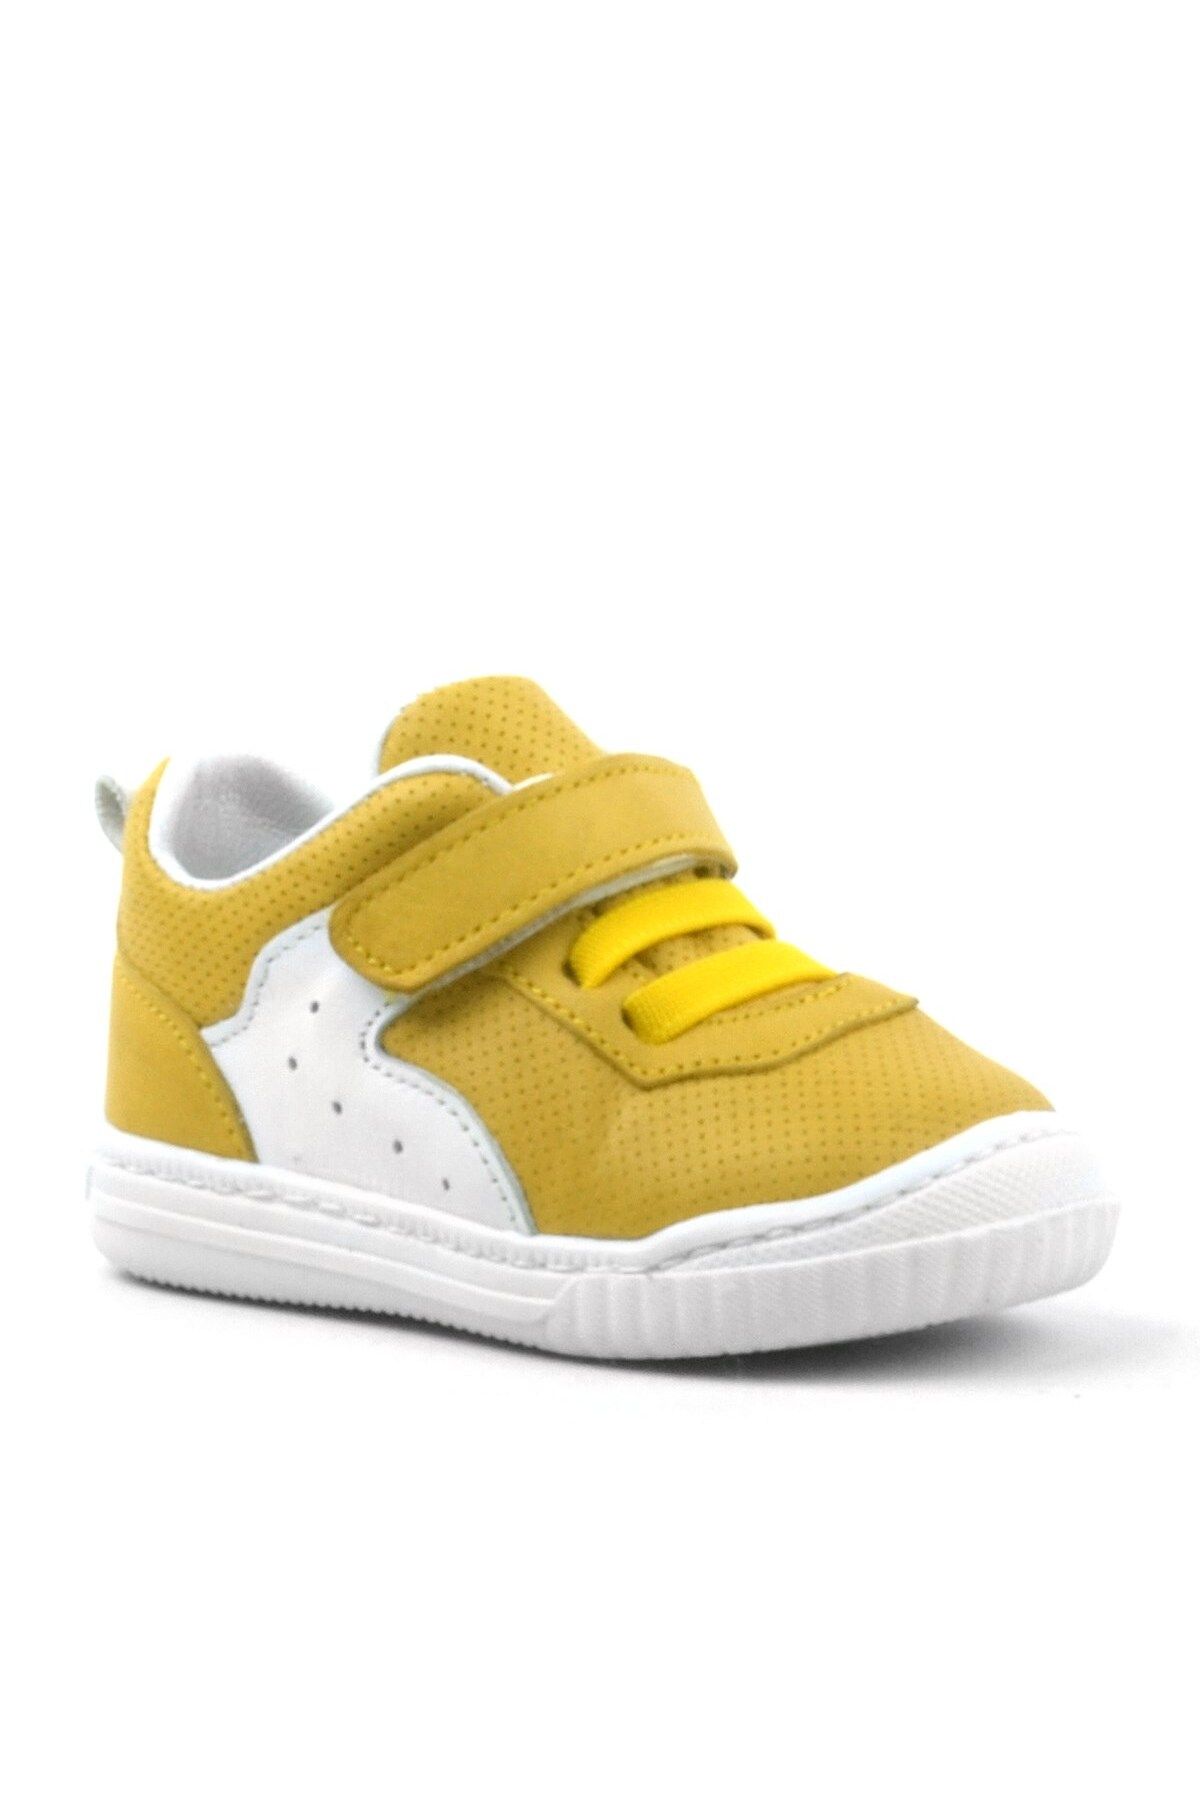 Rakerplus Pup Hakiki Deri Sarı Cırtlı Lastikli Bebek Sneaker